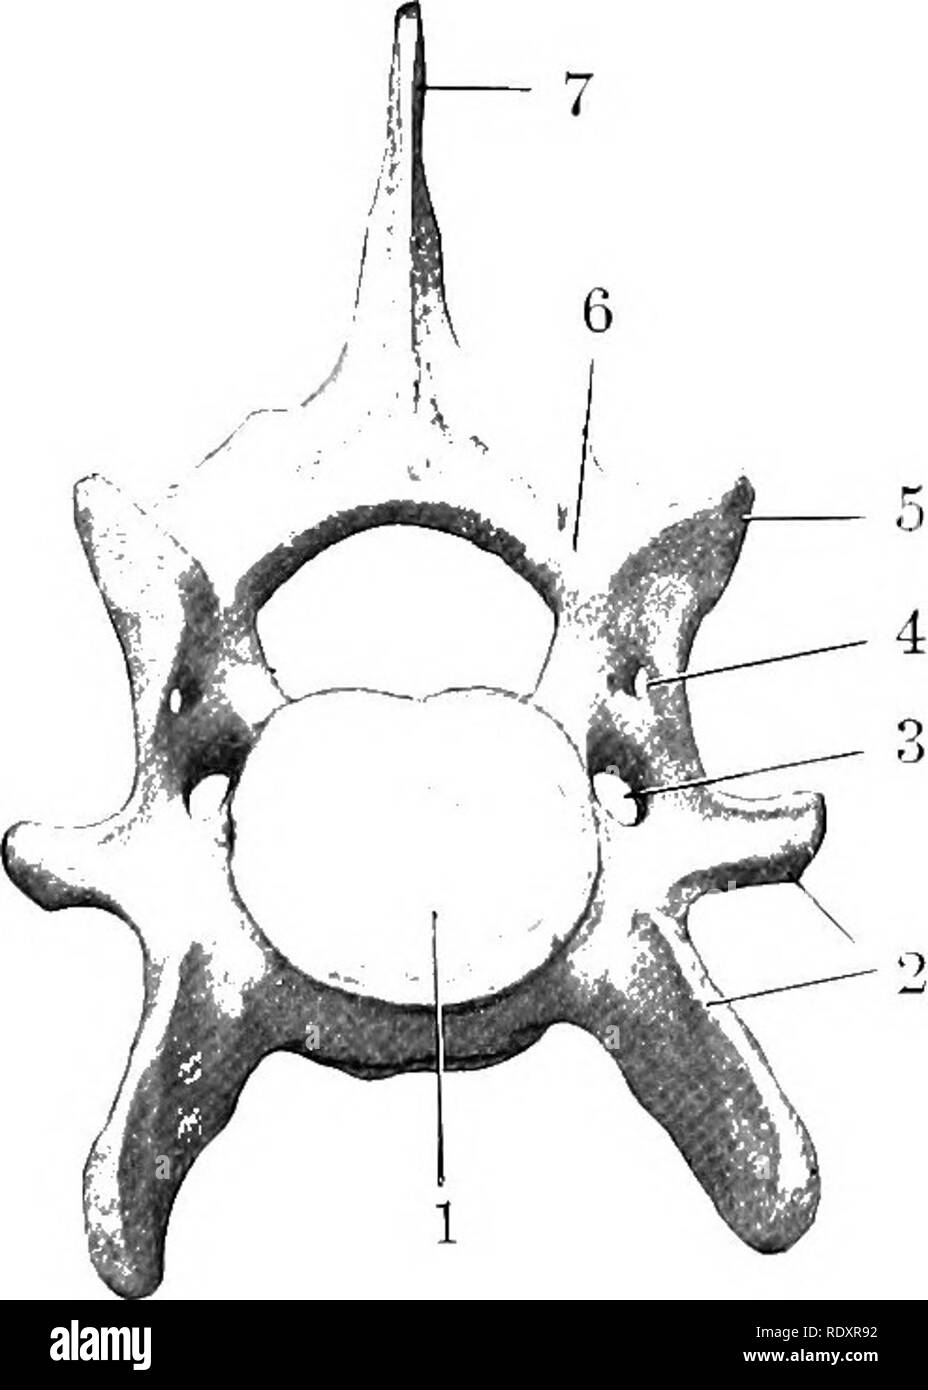 . L'anatomie de l'animaux domestiques . Anatomie vétérinaire. Fig. 164,-quatrième vertèbre cervicale de cochon ; Lat- nérale A'iKW. 1, 1', la face antérieure et pos e résultats t- extrémités de bod^- ; 2, arche ; 3, 4 ; passage du trou occipital, apophyse antérieure ; 5, apophyse épineuse ; 6., succursale de ventrale transverse. Fig. 165.-sixième CERvir'AL Vertèbre de cochon ; vue antérieure. 1, corps ; 2, 3 ; processus transverse, foramen transversarium ; 4, d'autres de foramen arch ; 5, processus articulaire ; 6, 7 ; arch apophyse épineuse,.. Veuillez noter que ces images sont extraites de la page numérisée des images qui peuvent avoir été retouchées numériquement Banque D'Images